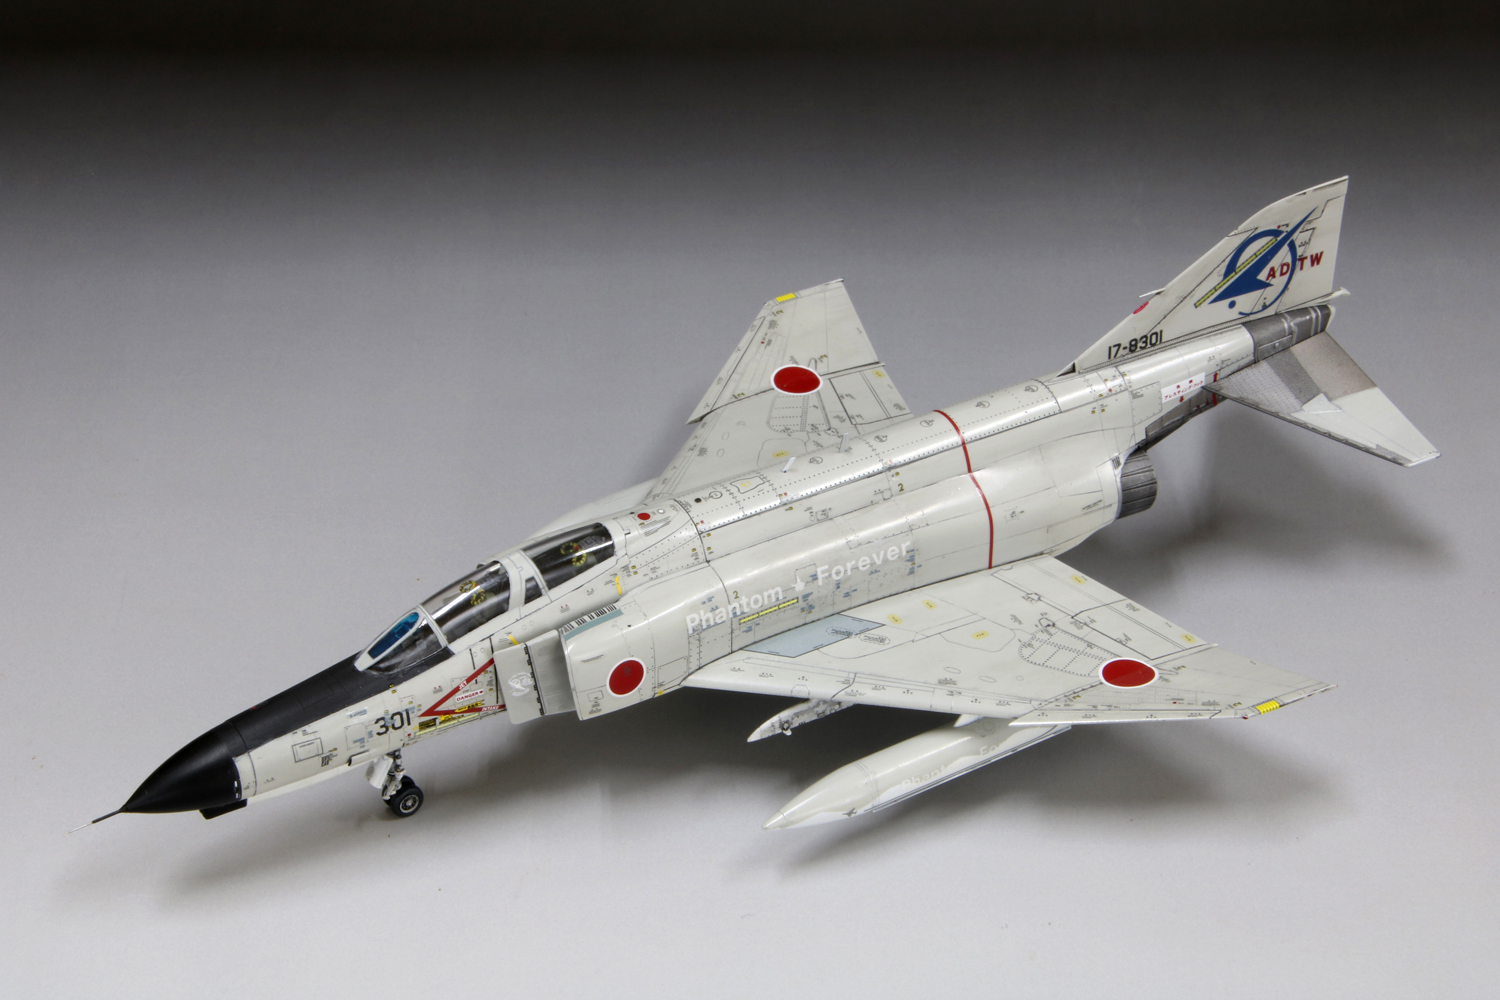 ファインモールド F-4EJ 301号機ファイナル